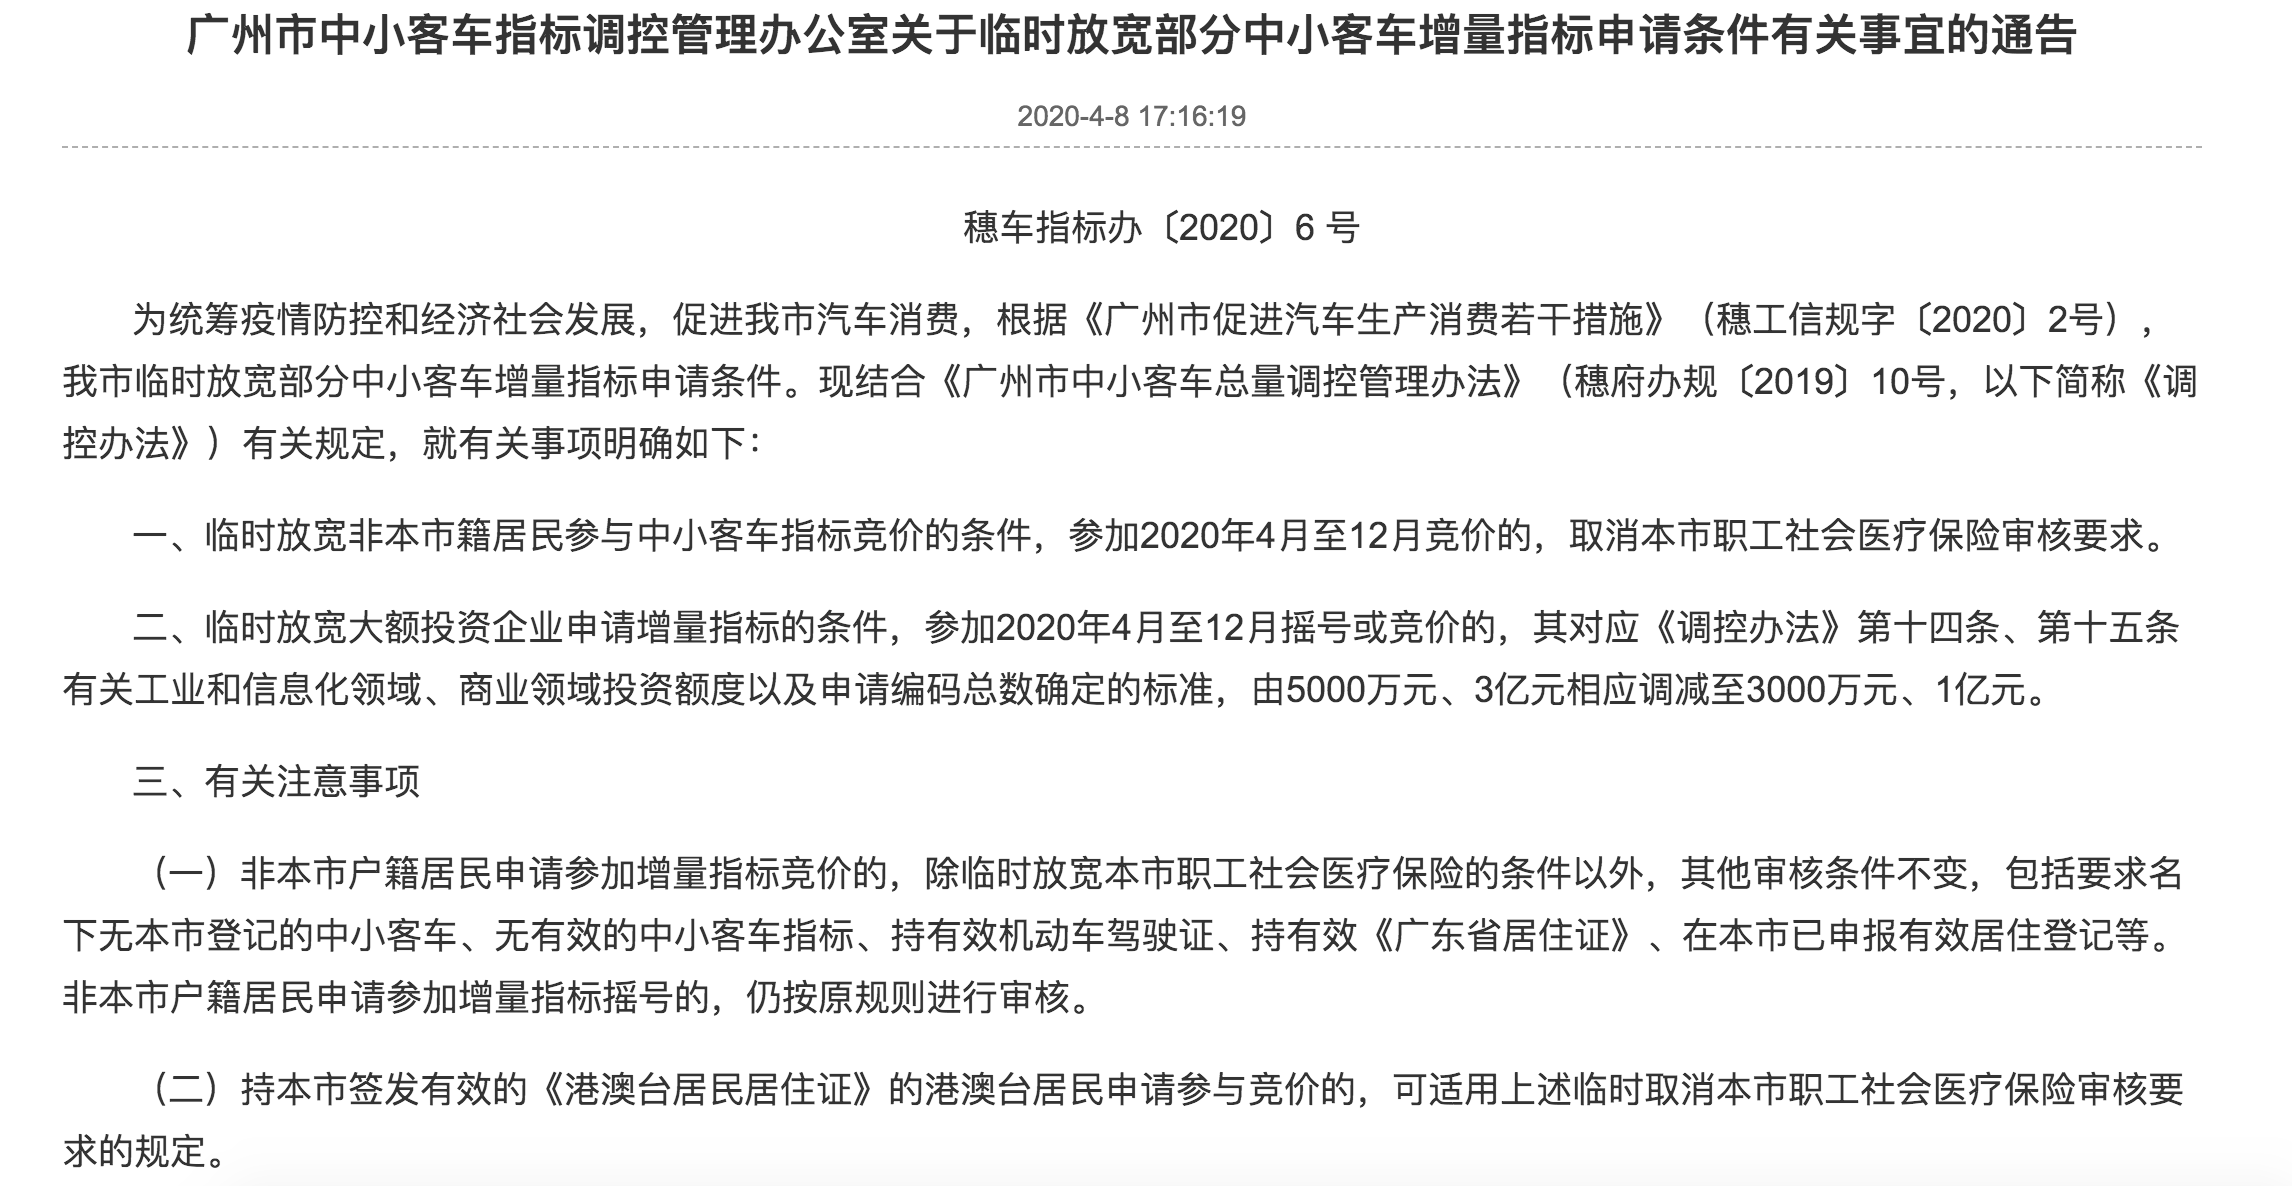 广州临时放宽车牌申请条件！非本市户籍取消医保审核